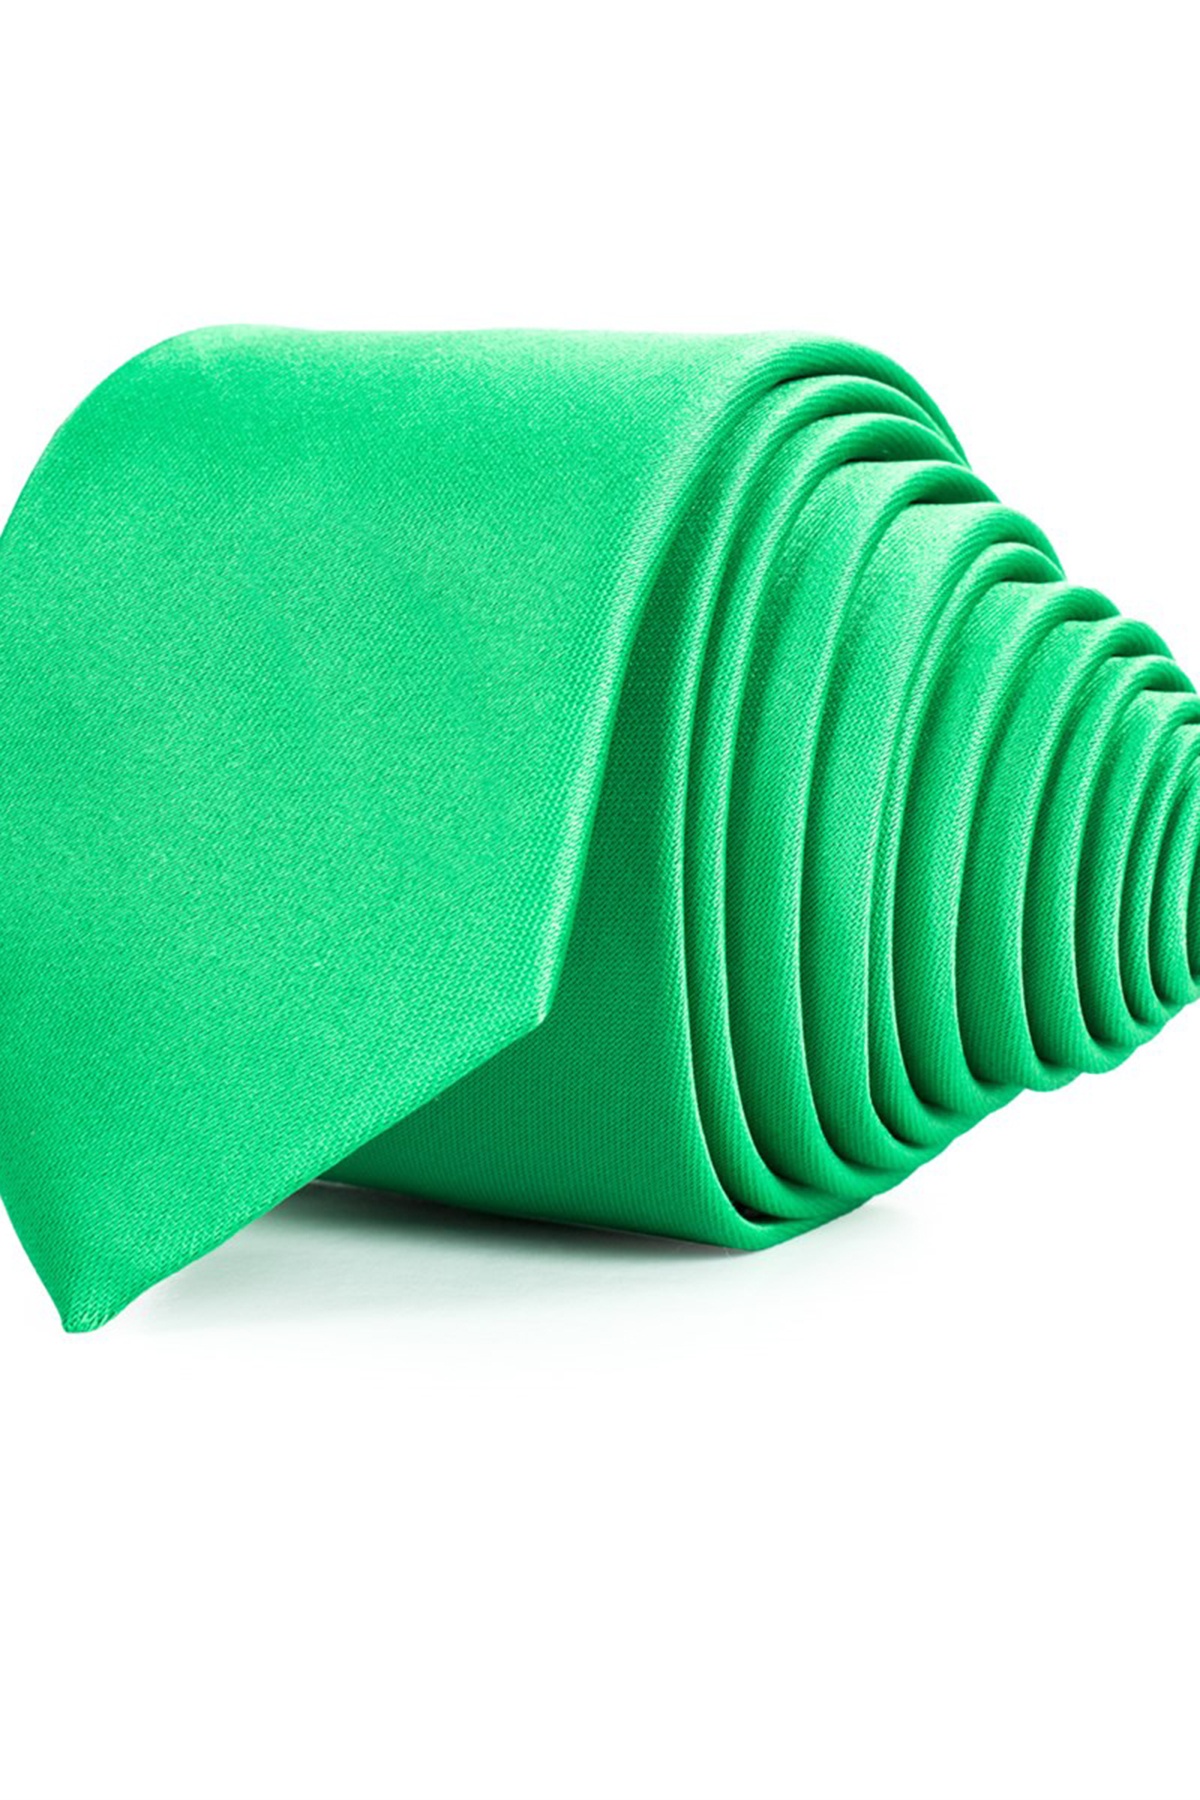 Zöld színű vékony nyakkendő